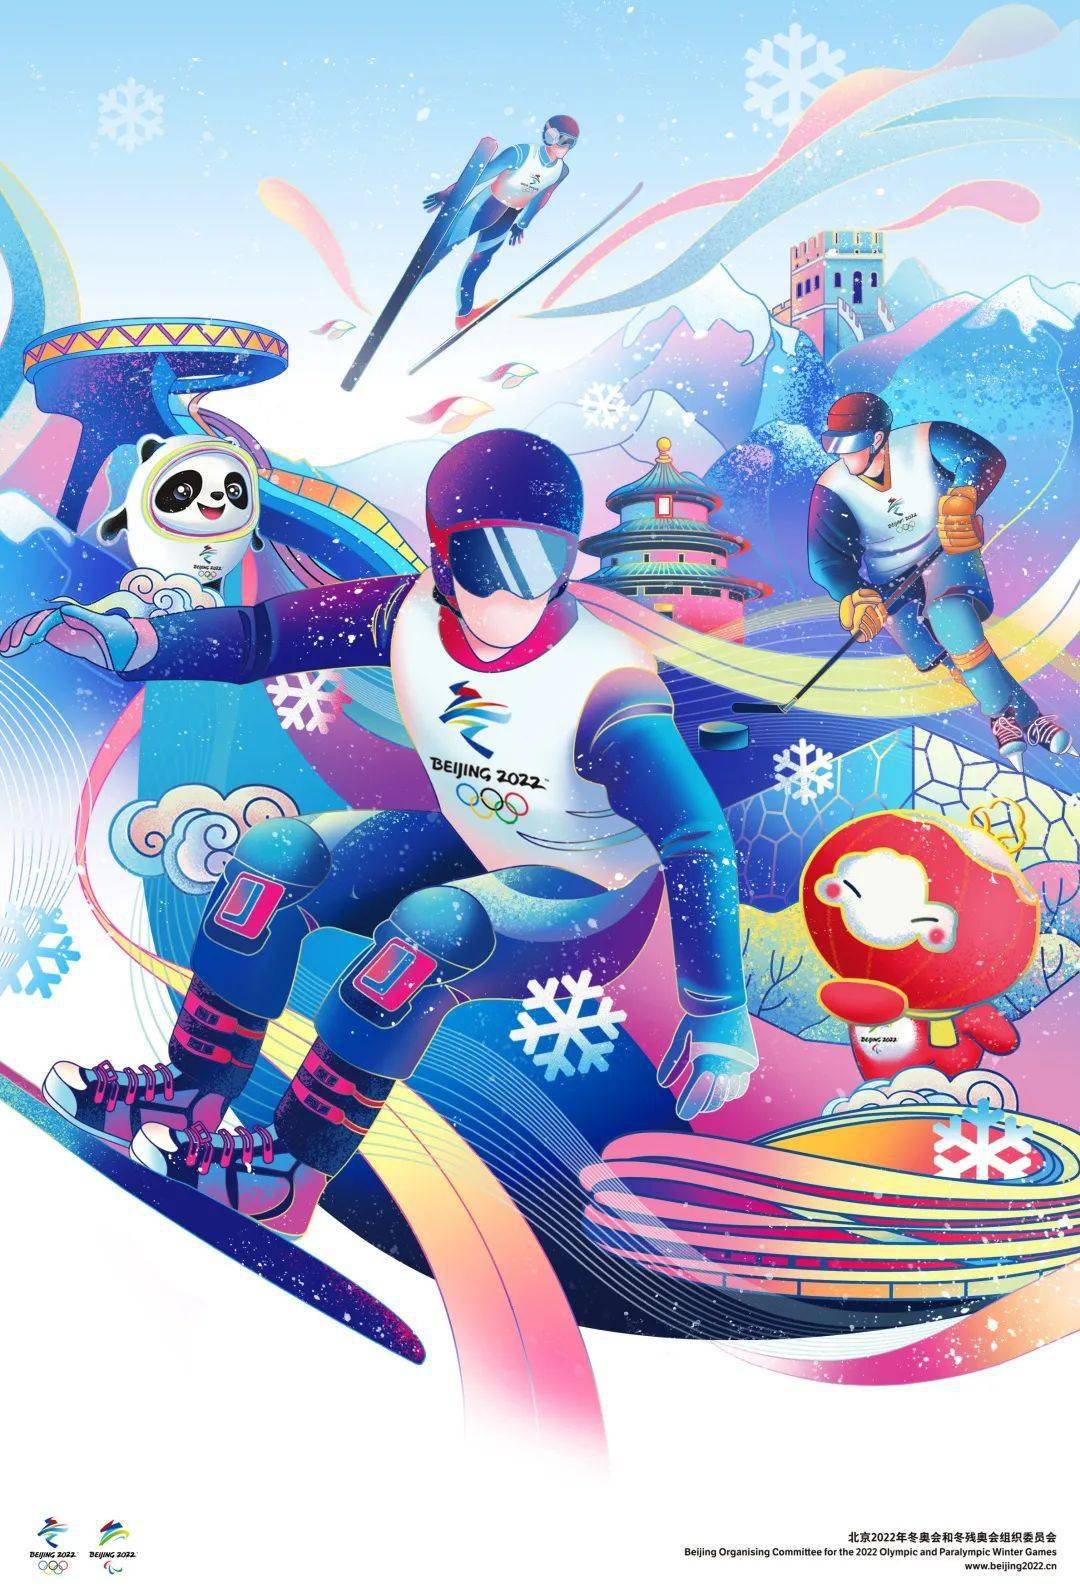 画面以三名冰雪运动员为主体,环绕动态飘舞的丝带,以国潮风插画形式